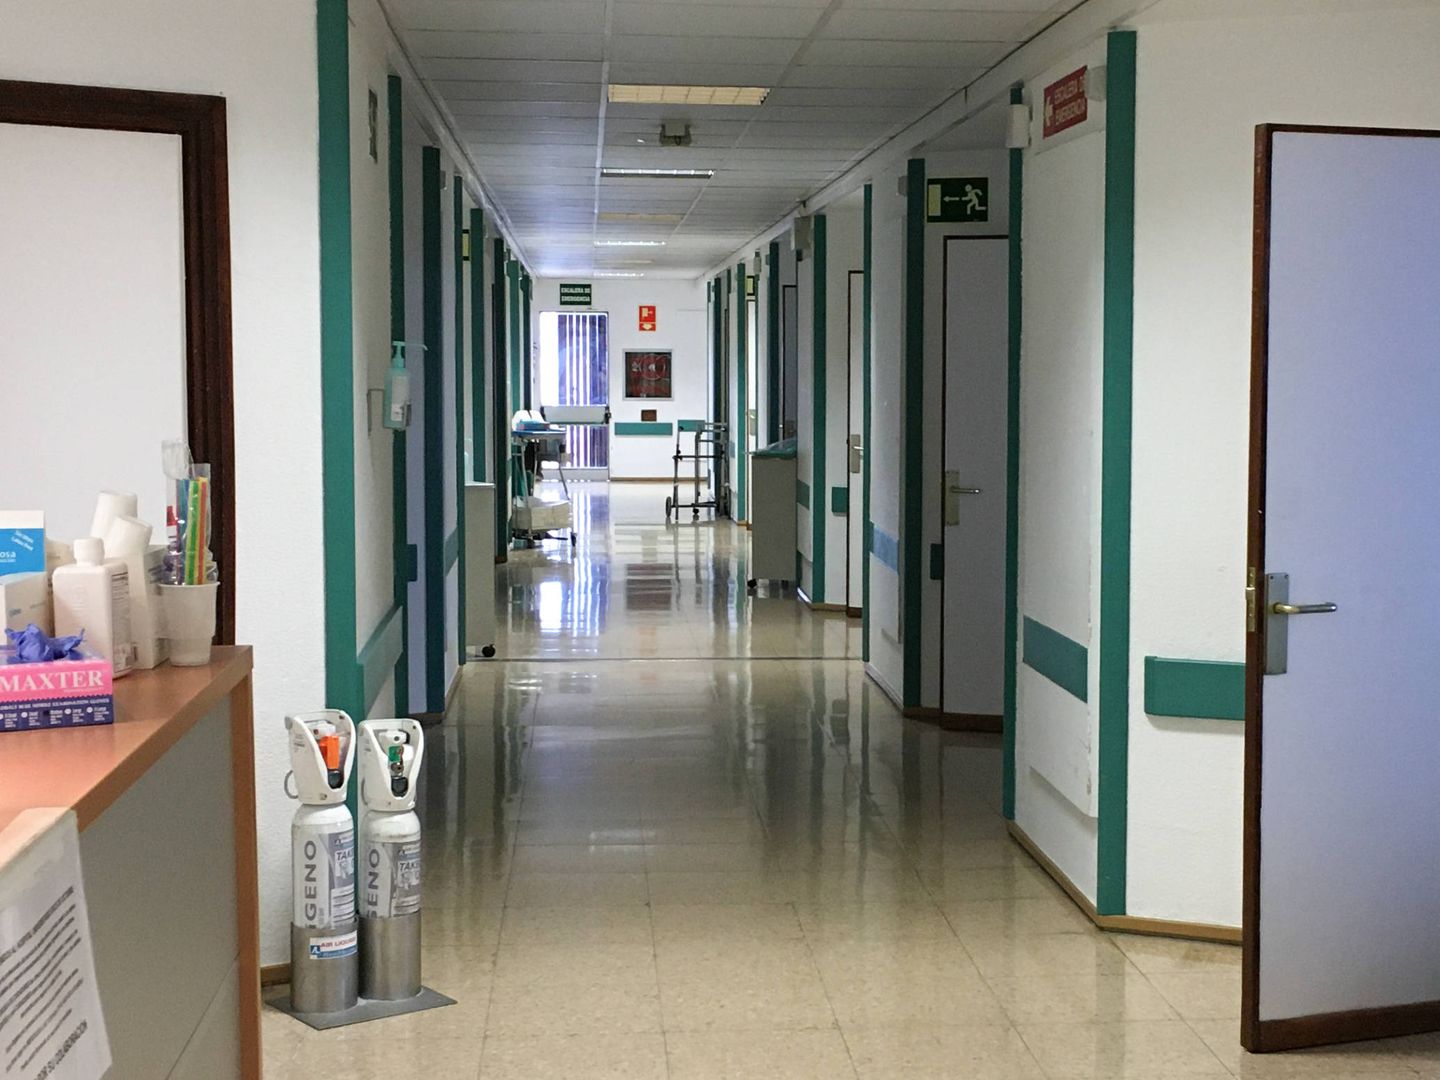 Los pasillos del hospital están totalmente vacíos de visitantes. (D. B.) 